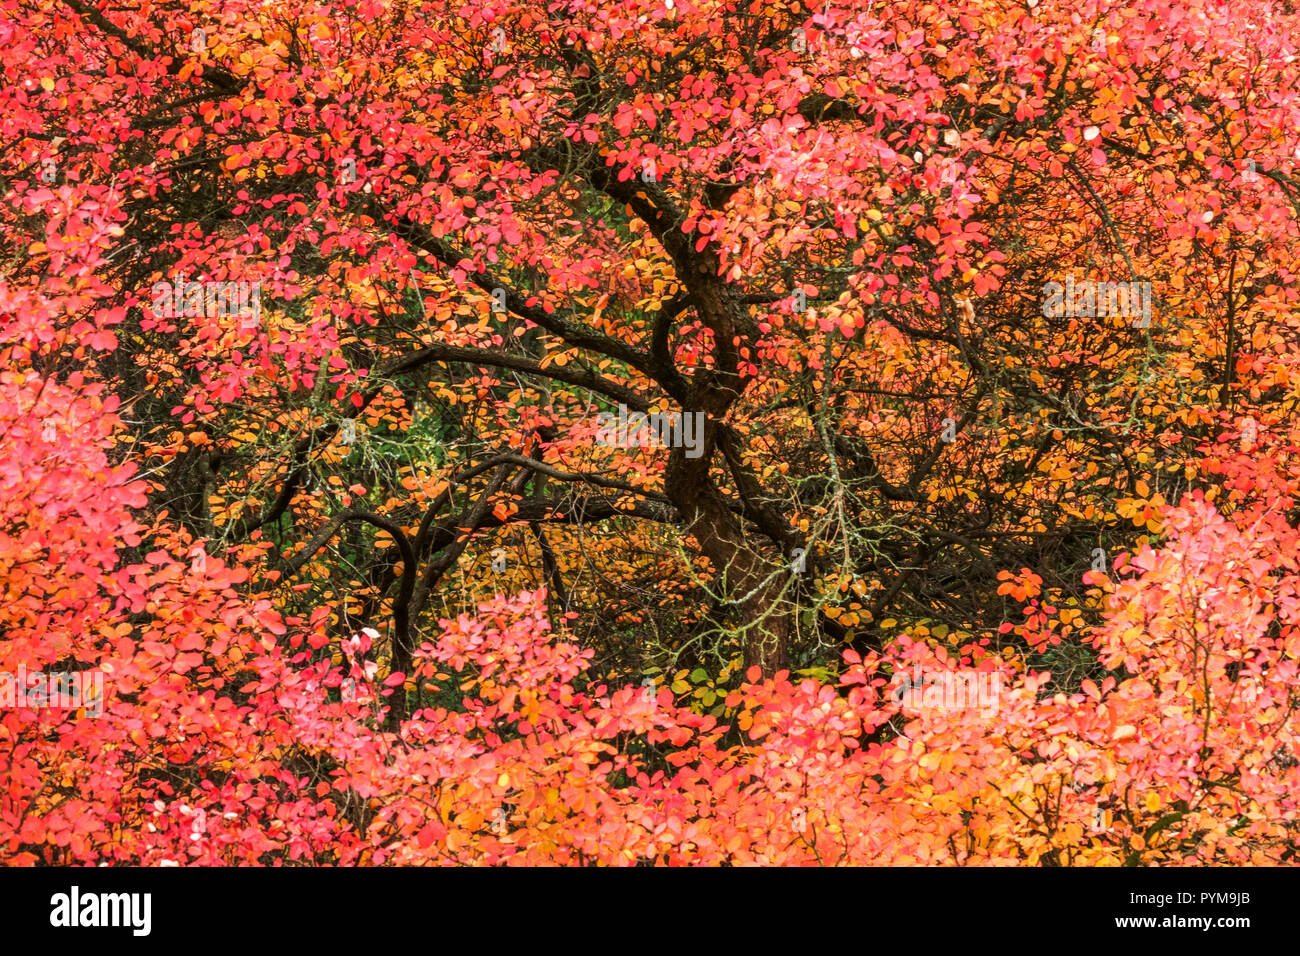 Smoketree or Smokebush, Cotinus coggygria tree in red autumn foliage Stock Photo